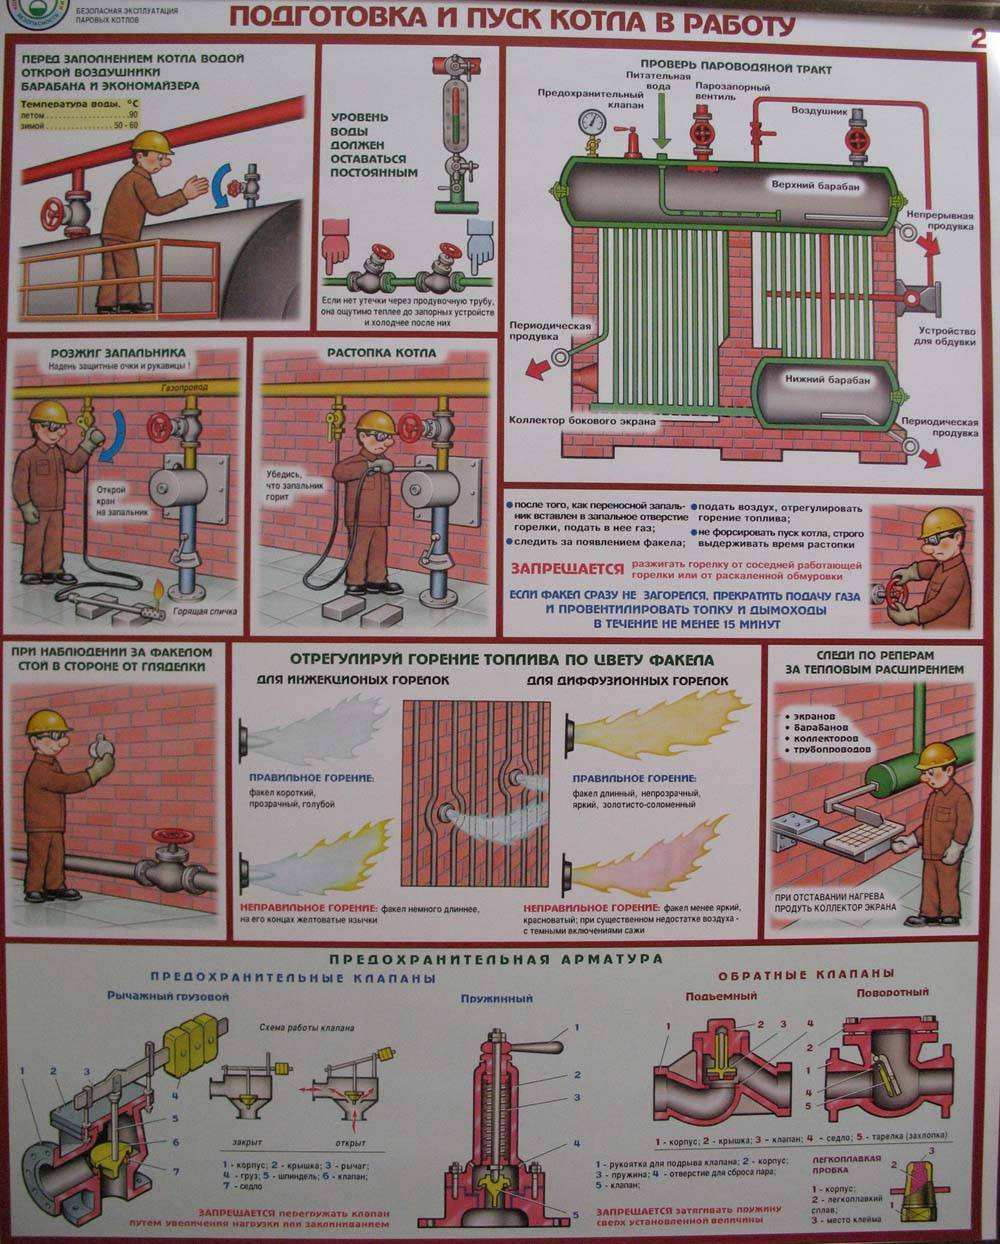 Как выключить газовый котел на консервацию: пошаговые правила и требования безопасности - все об инженерных системах